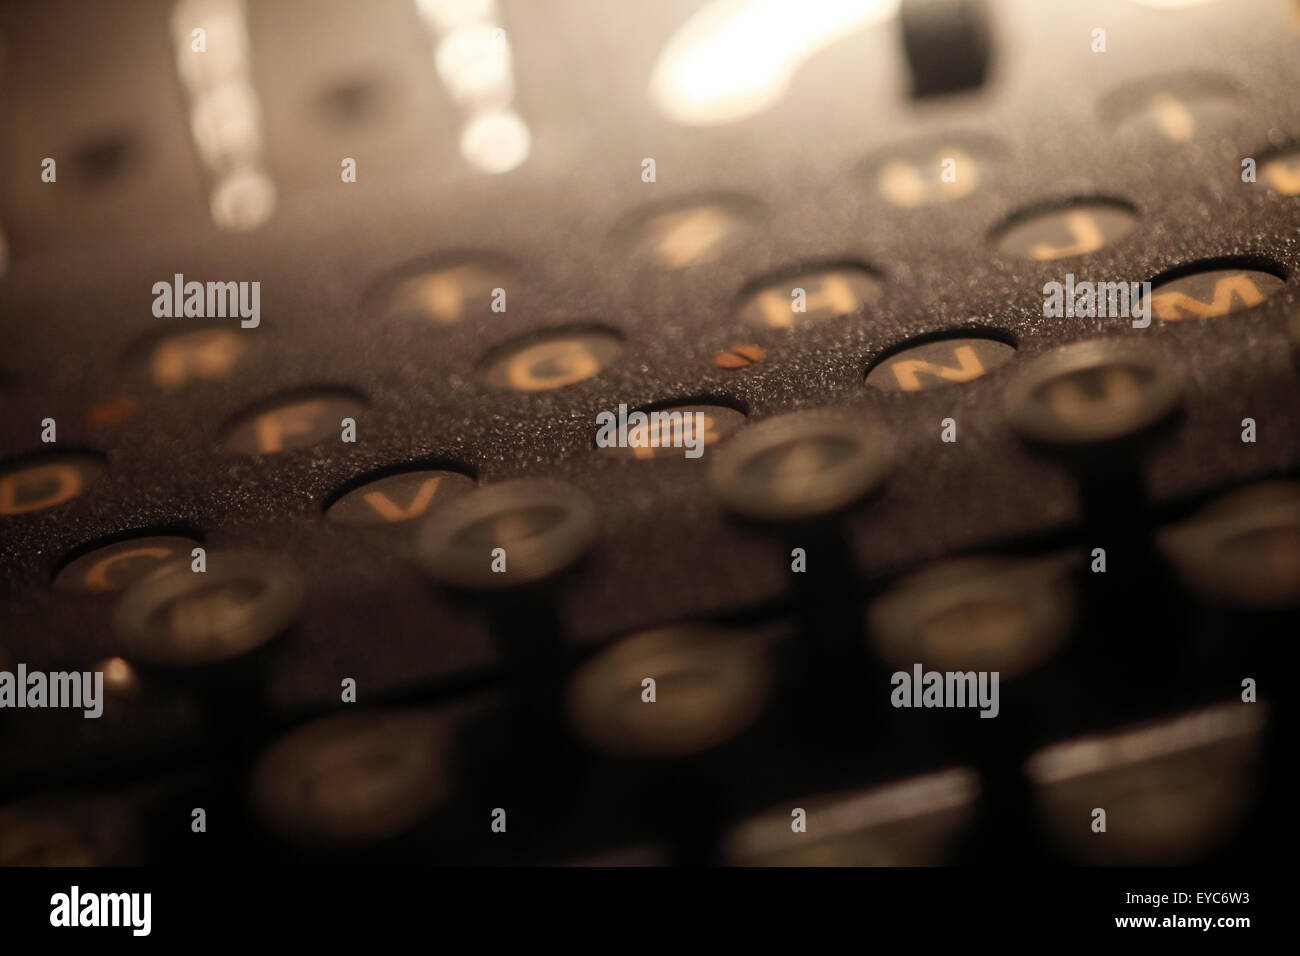 La macchina Enigma. Crittografia tedesco macchina nella II Guerra Mondiale Foto Stock